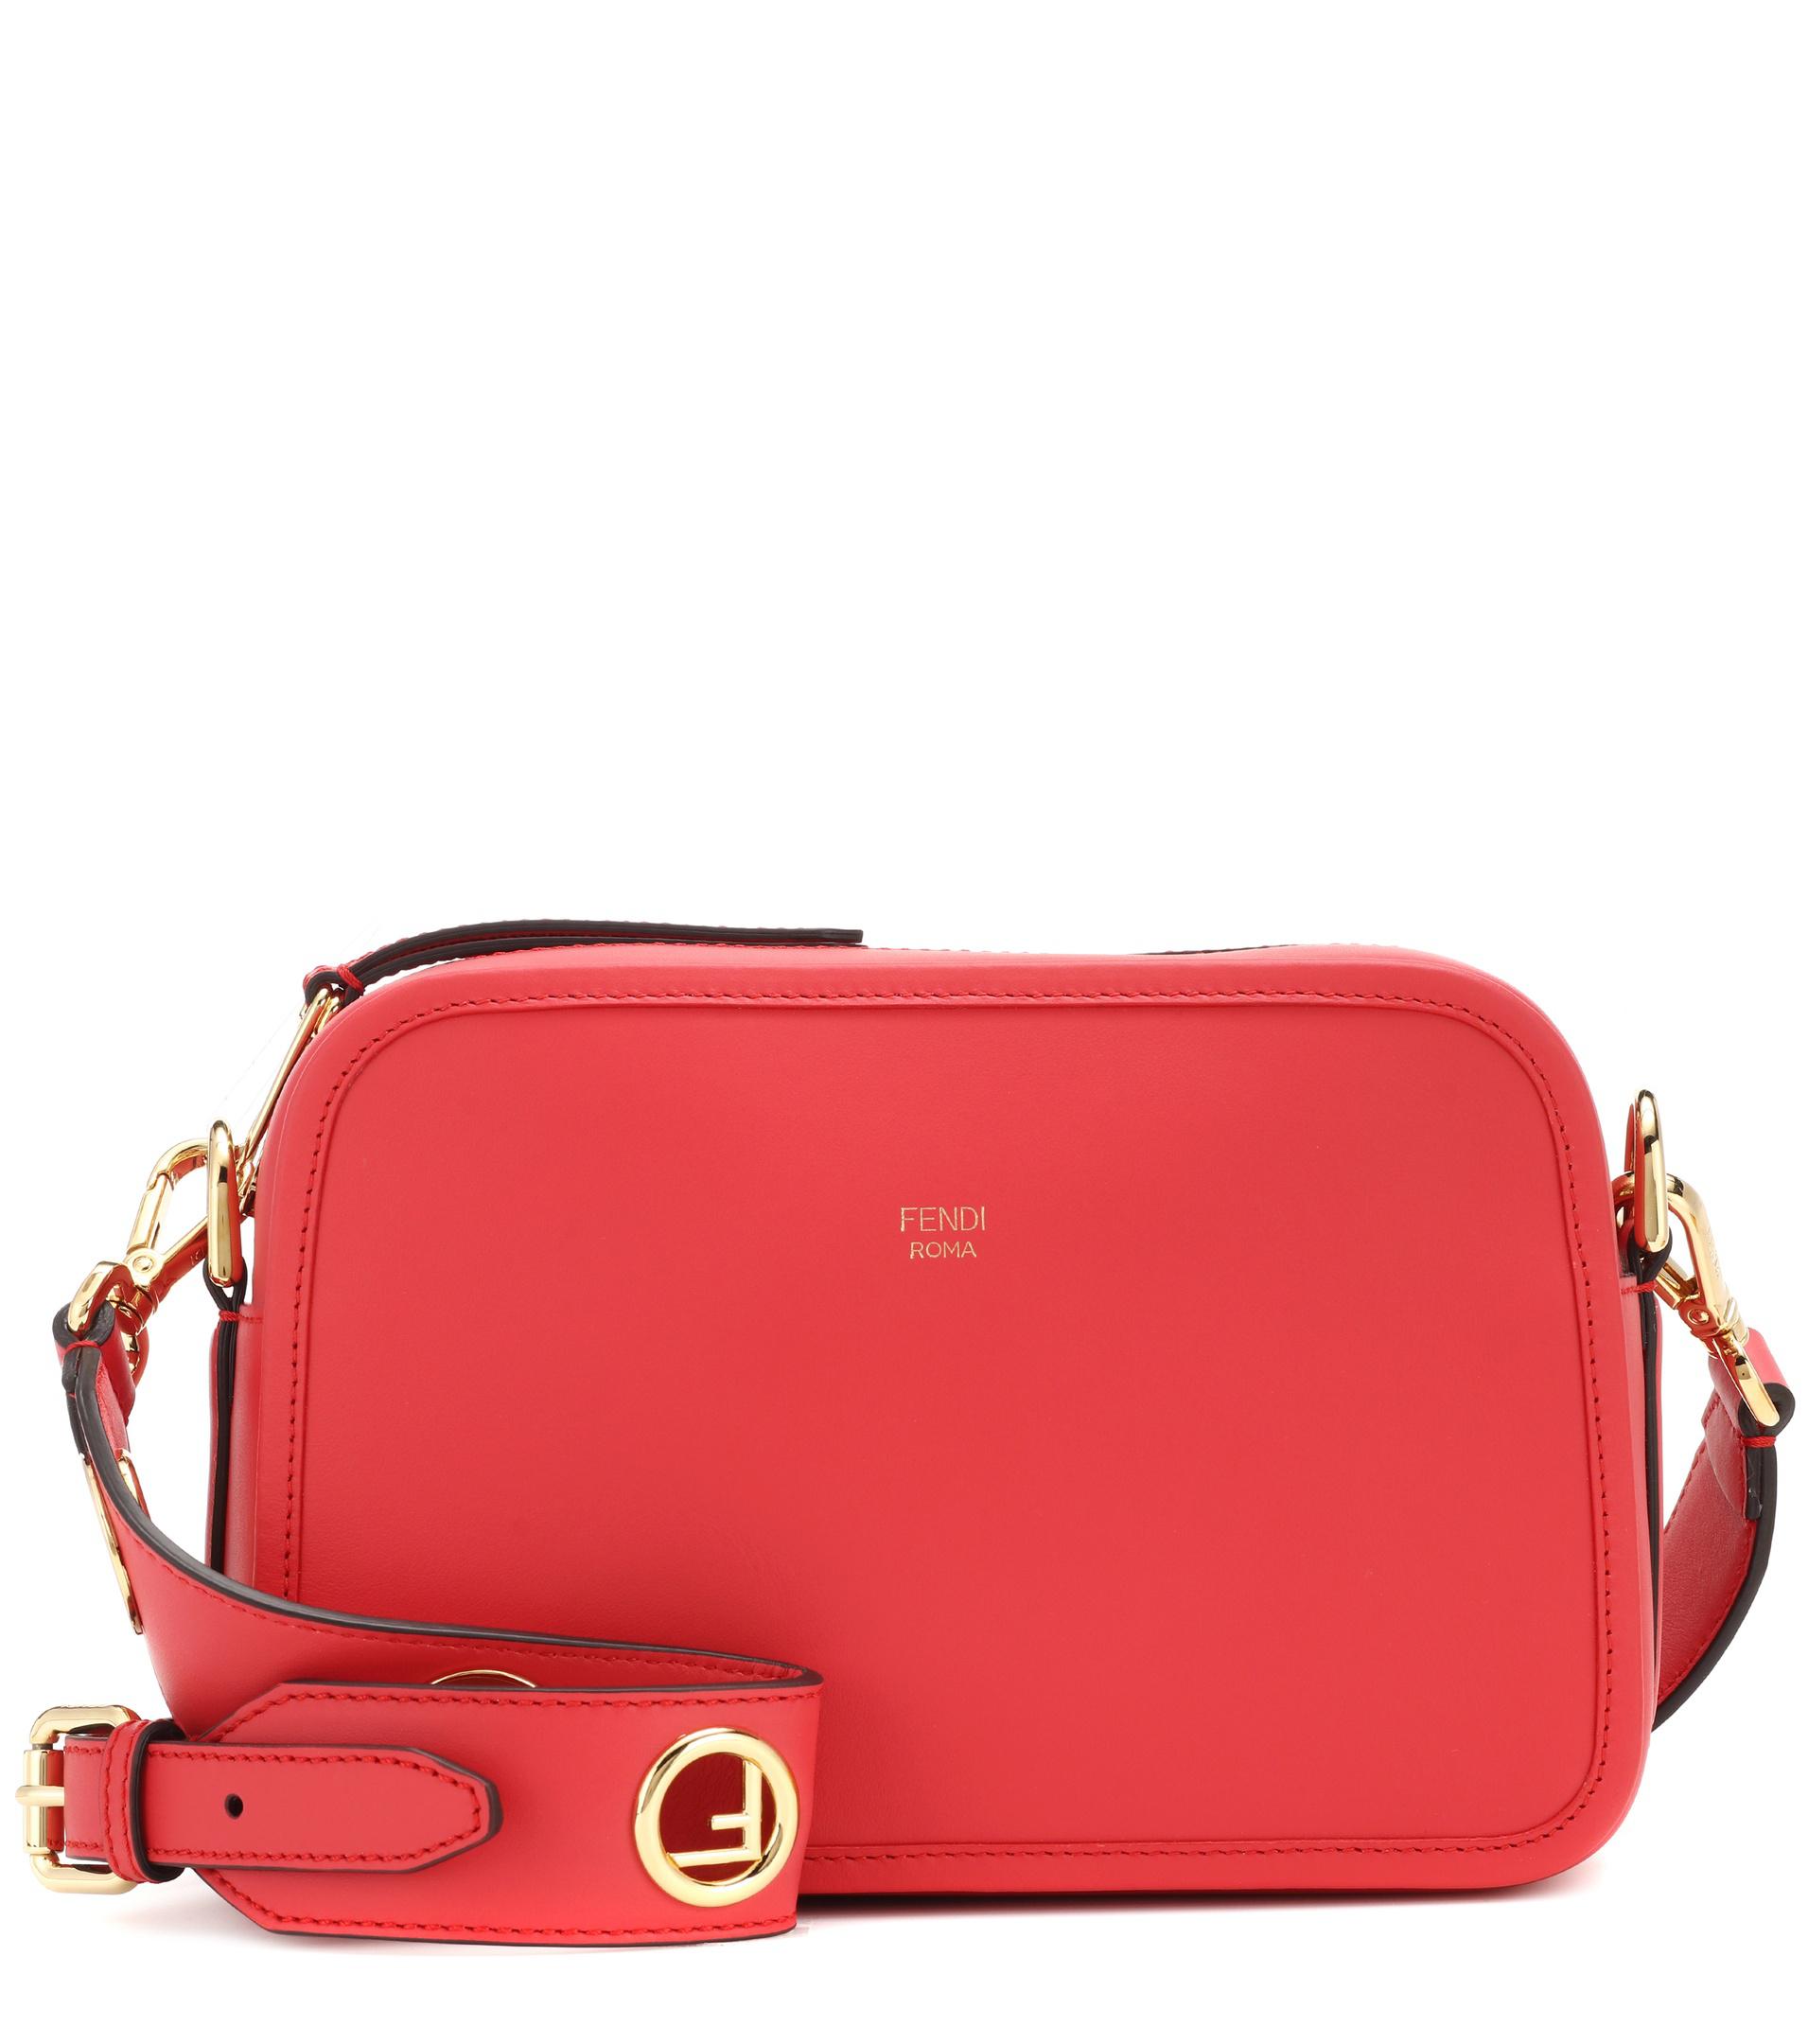 Fendi Camera Case Leather Shoulder Bag in Red - Lyst